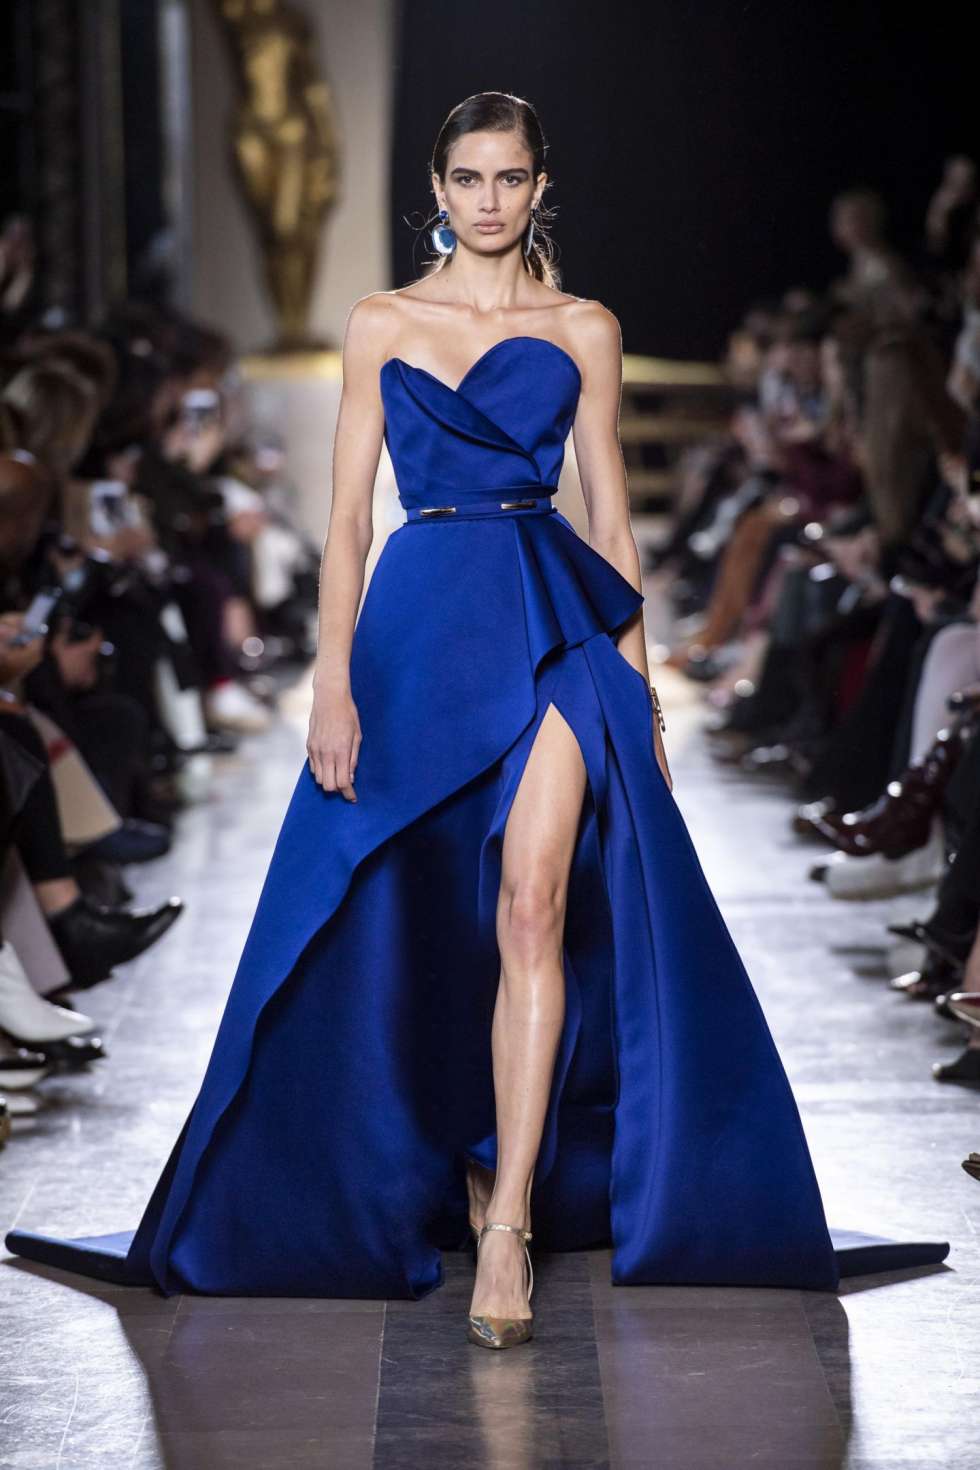 فساتين خطوبة باللون الأزرق من تصميم أشهر مصممي الأزياء اللبنانيين